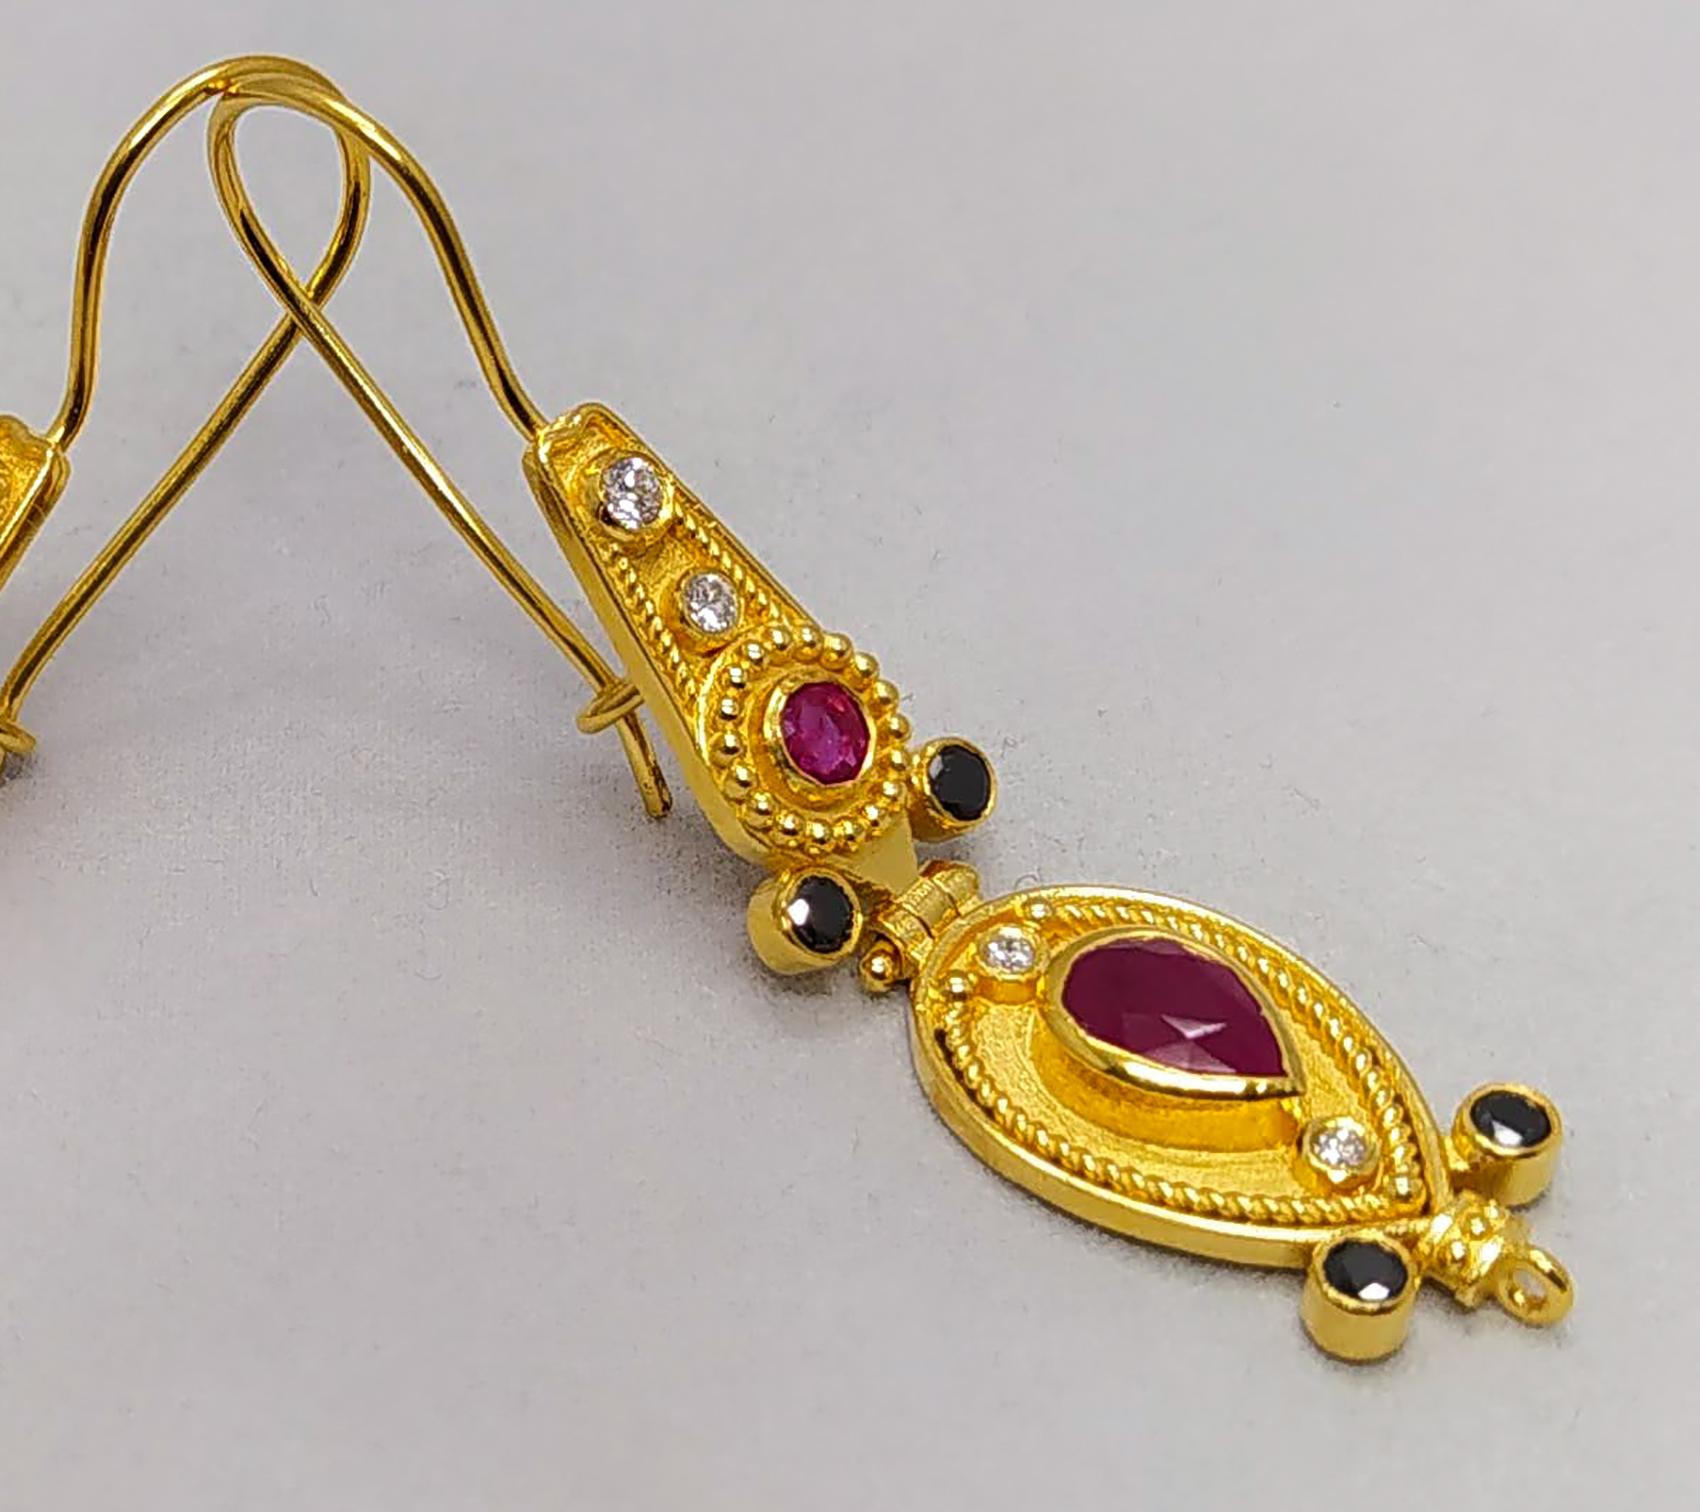 Die Ohrringe aus 18 Karat Gelbgold im byzantinischen Stil von S.Georgios werden in mikroskopischer Granulationsarbeit von Hand gefertigt und mit einem einzigartigen Samtuntergrund versehen. 
Das wunderschöne Paar besteht aus 2 natürlichen Rubinen im